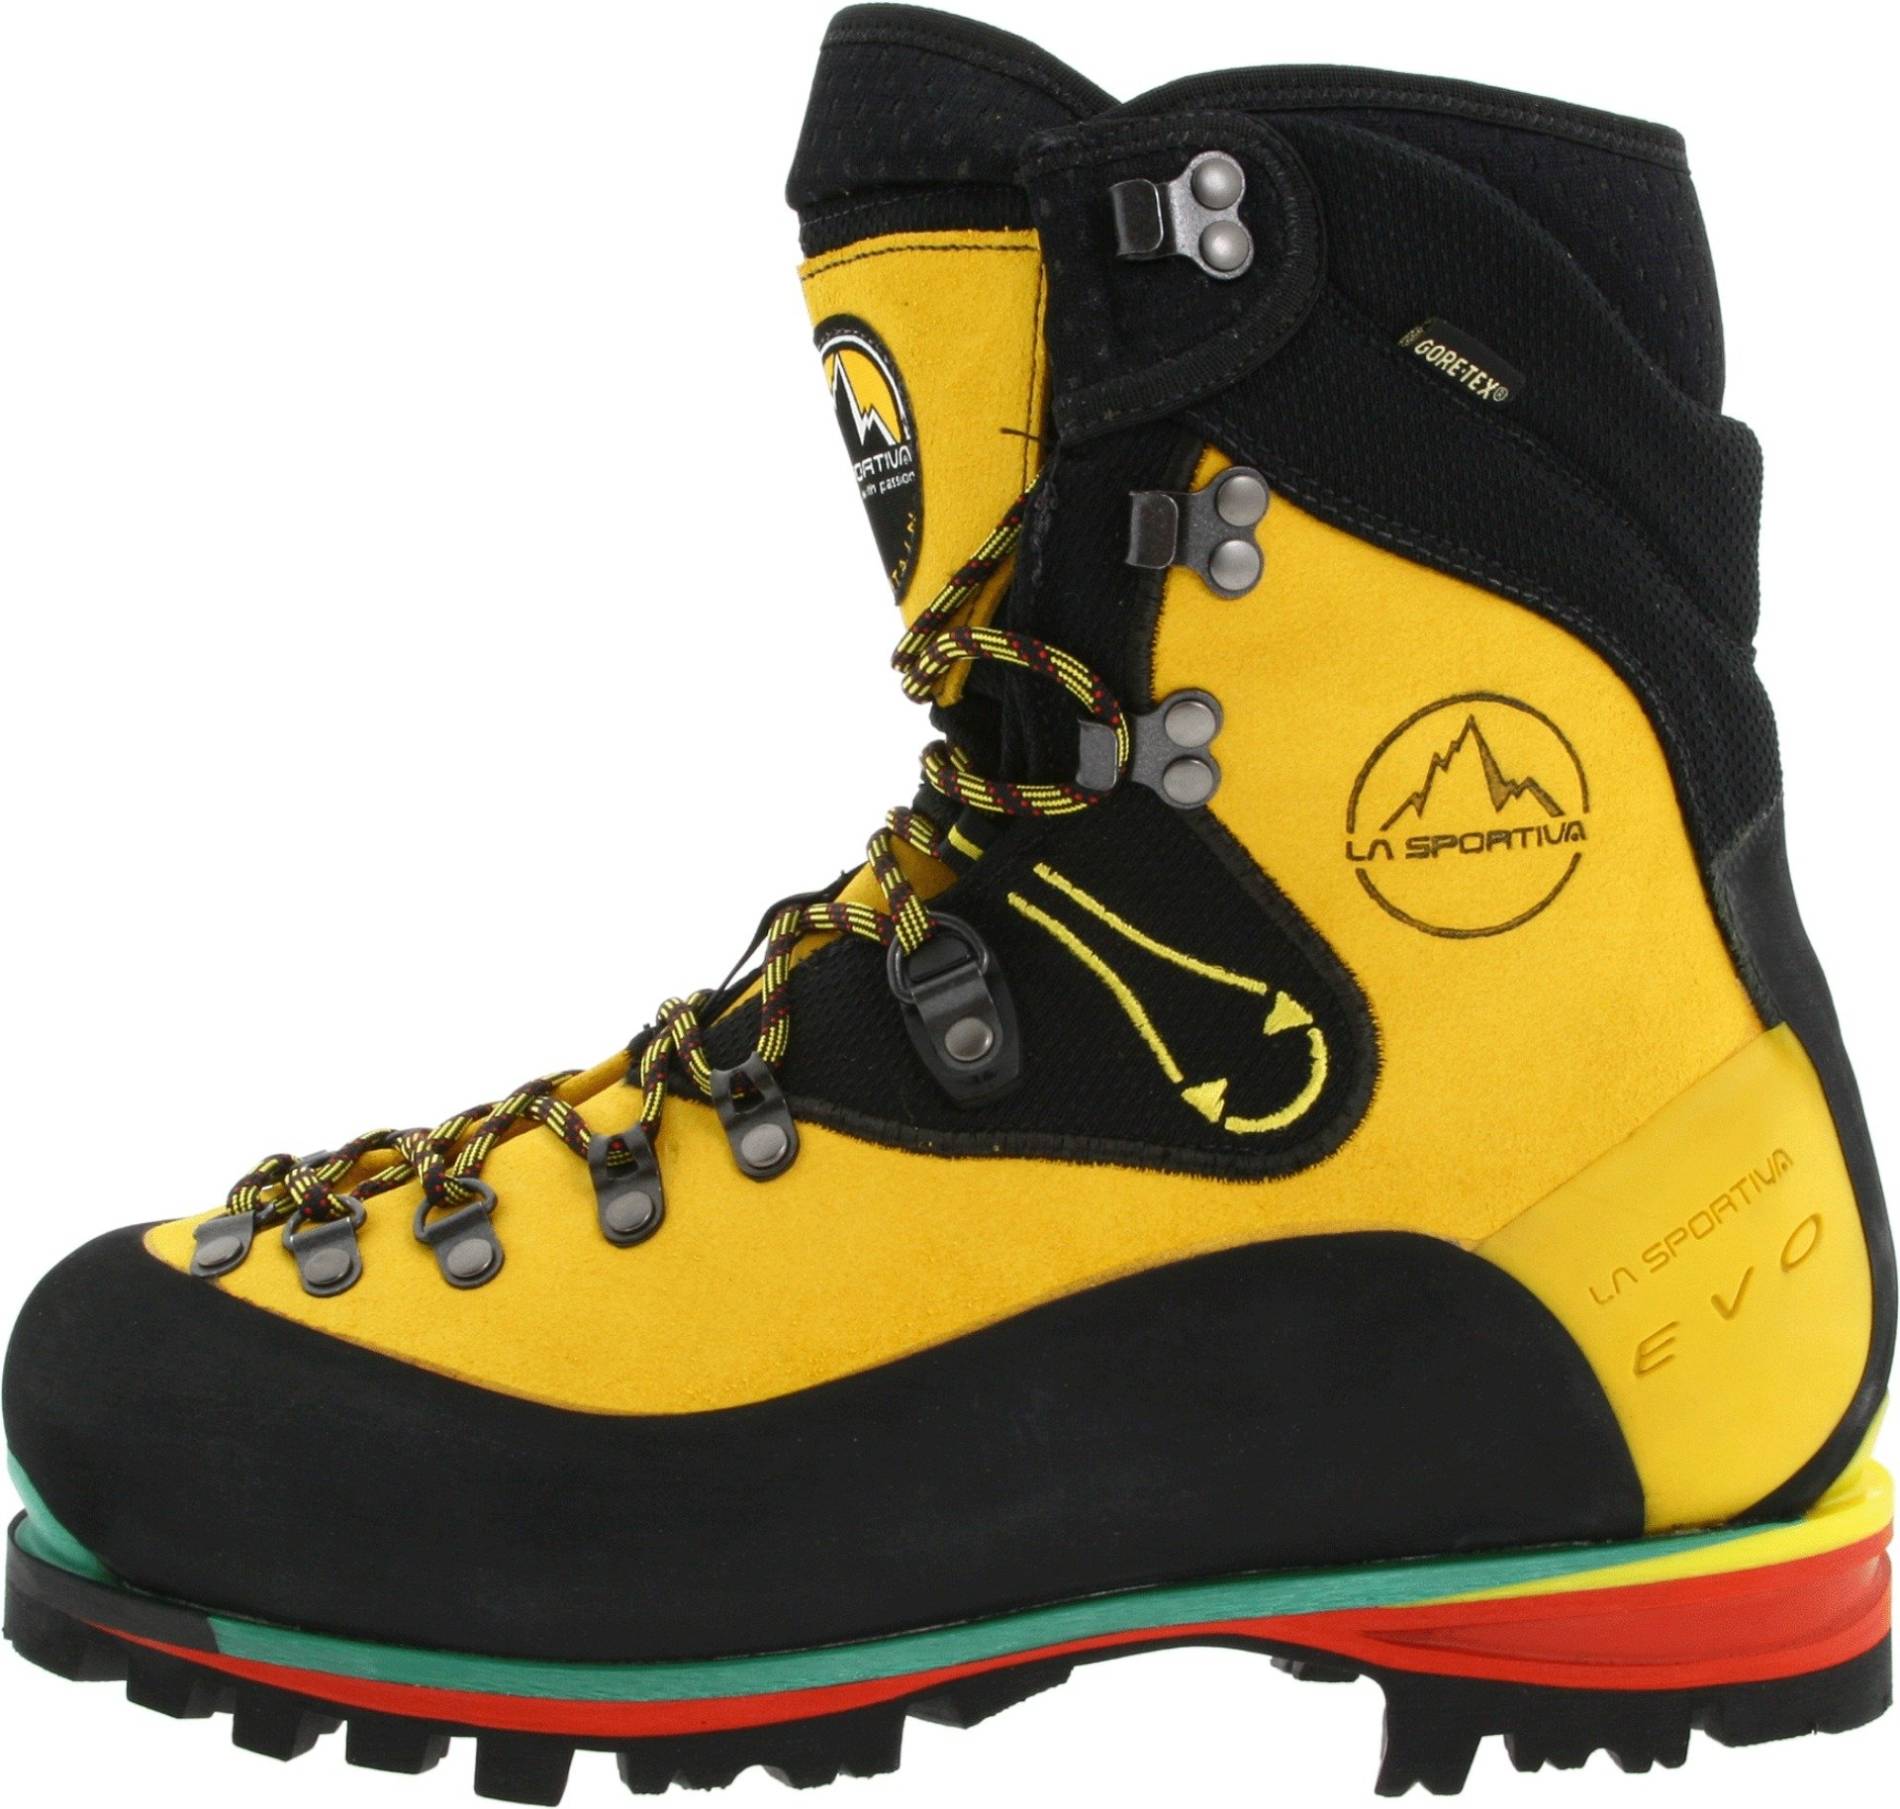 best 4 season mountaineering boots